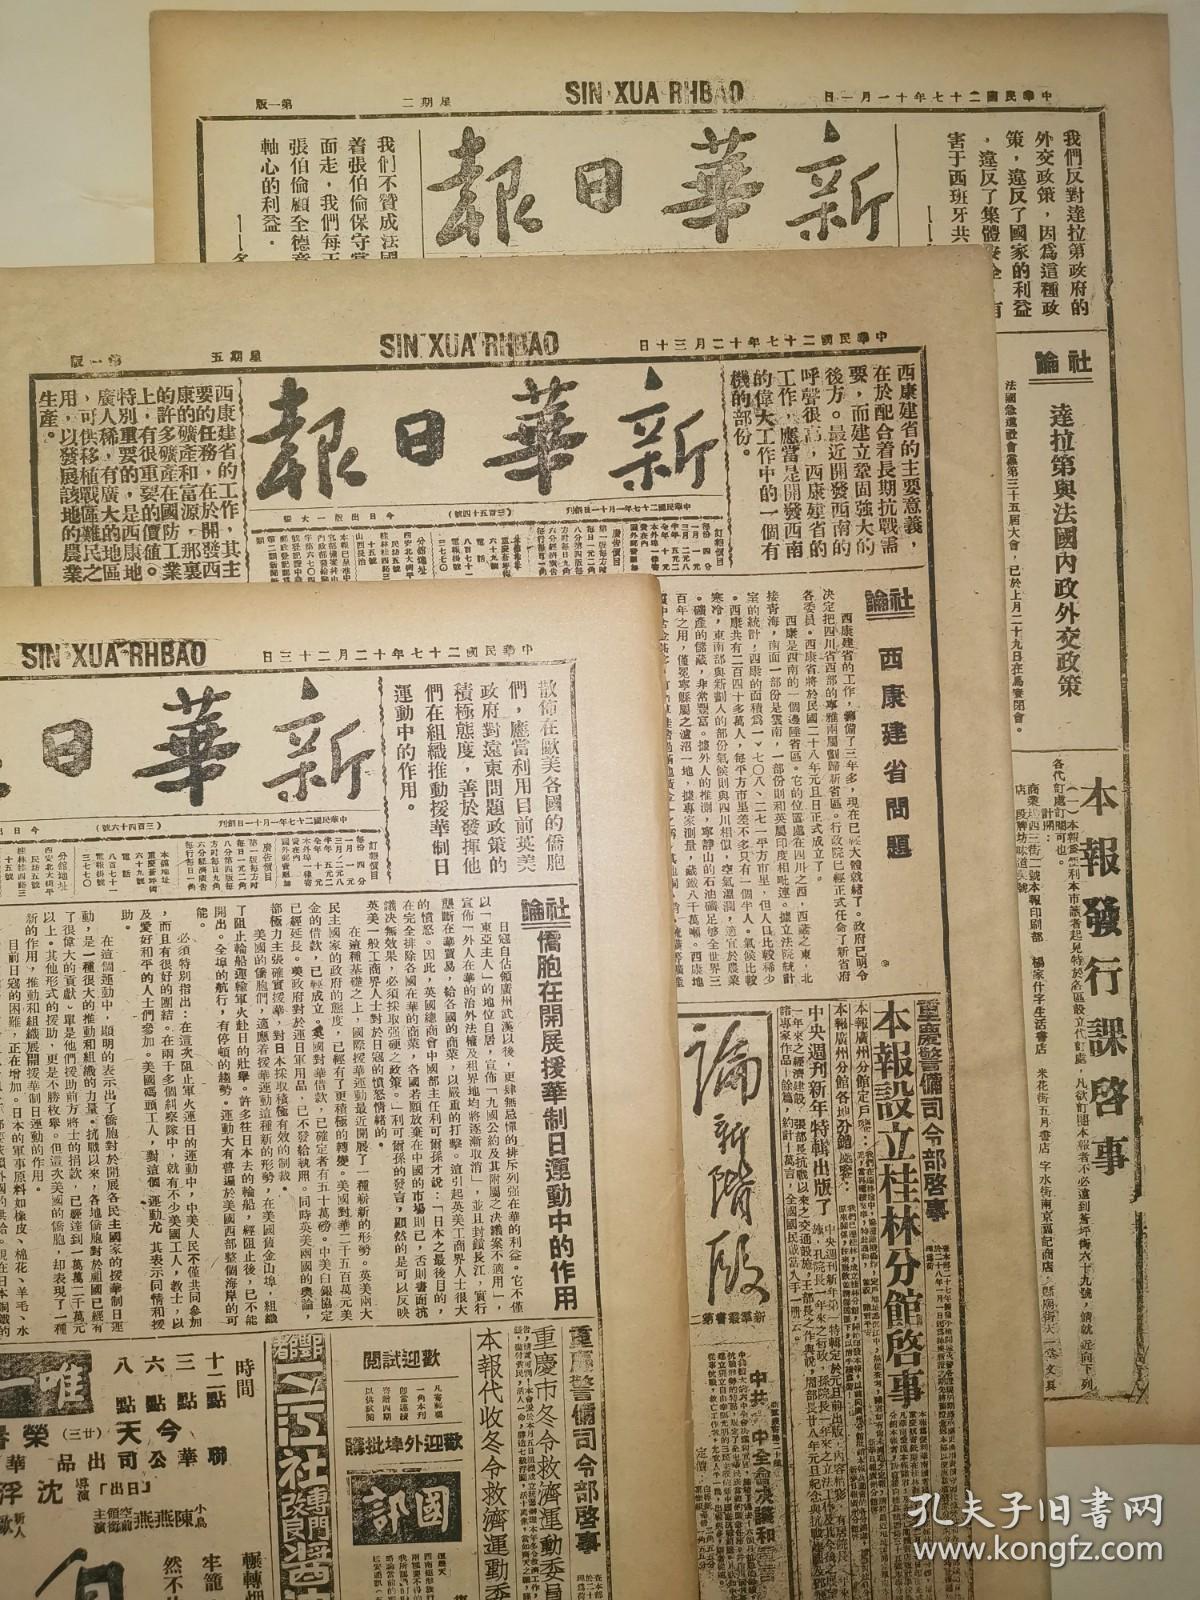 1947年1月26日 新华日报 文史资料